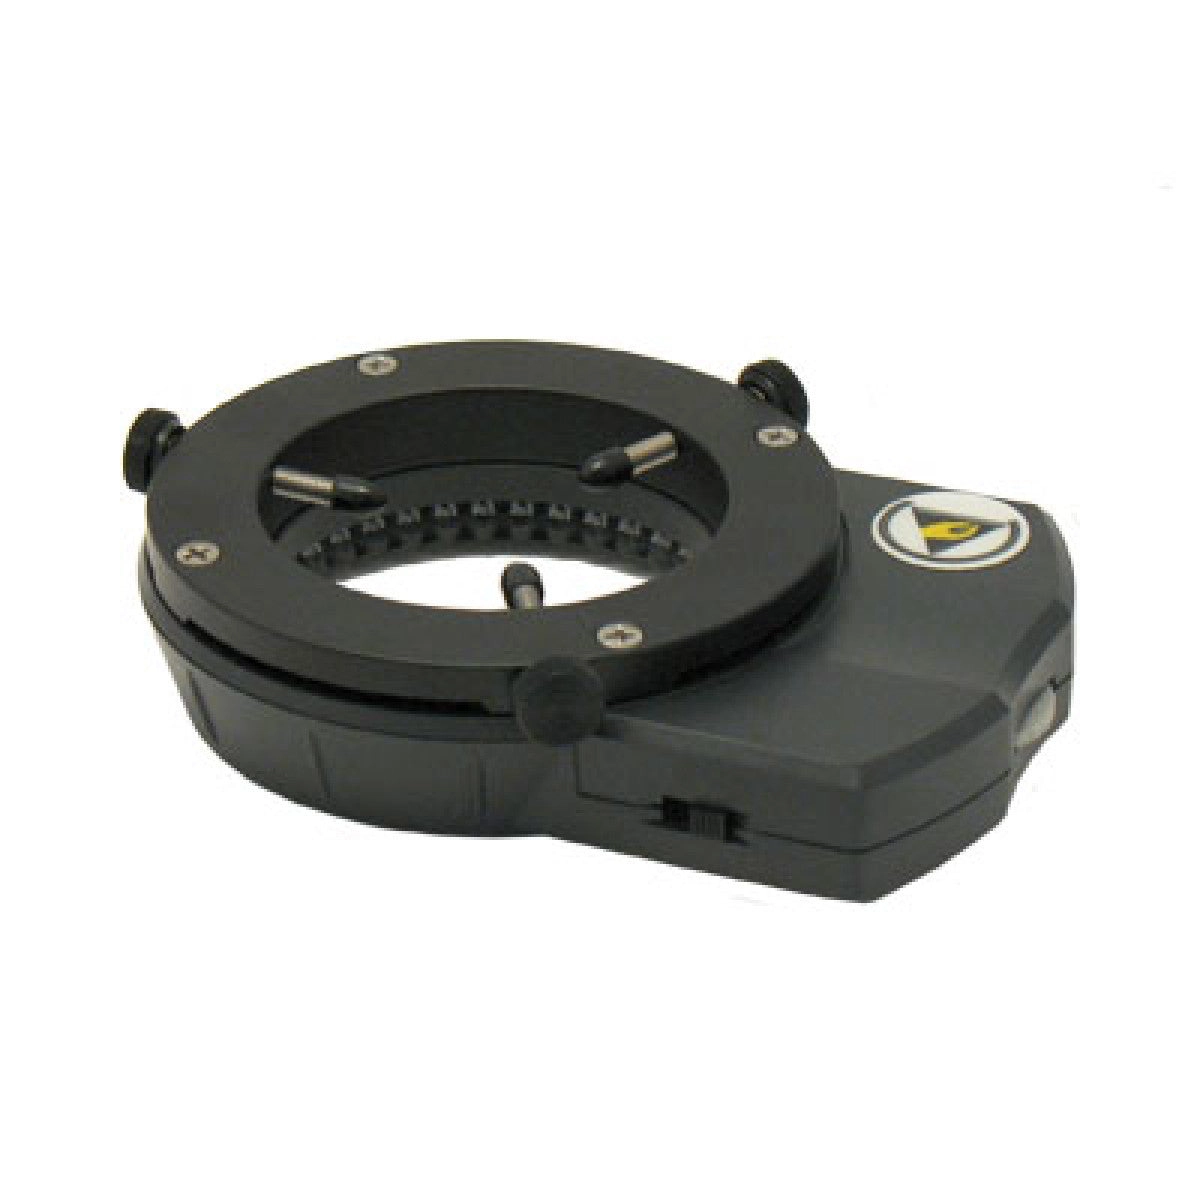 Accu-Scope LED140 Ring Illuminator with Polarization